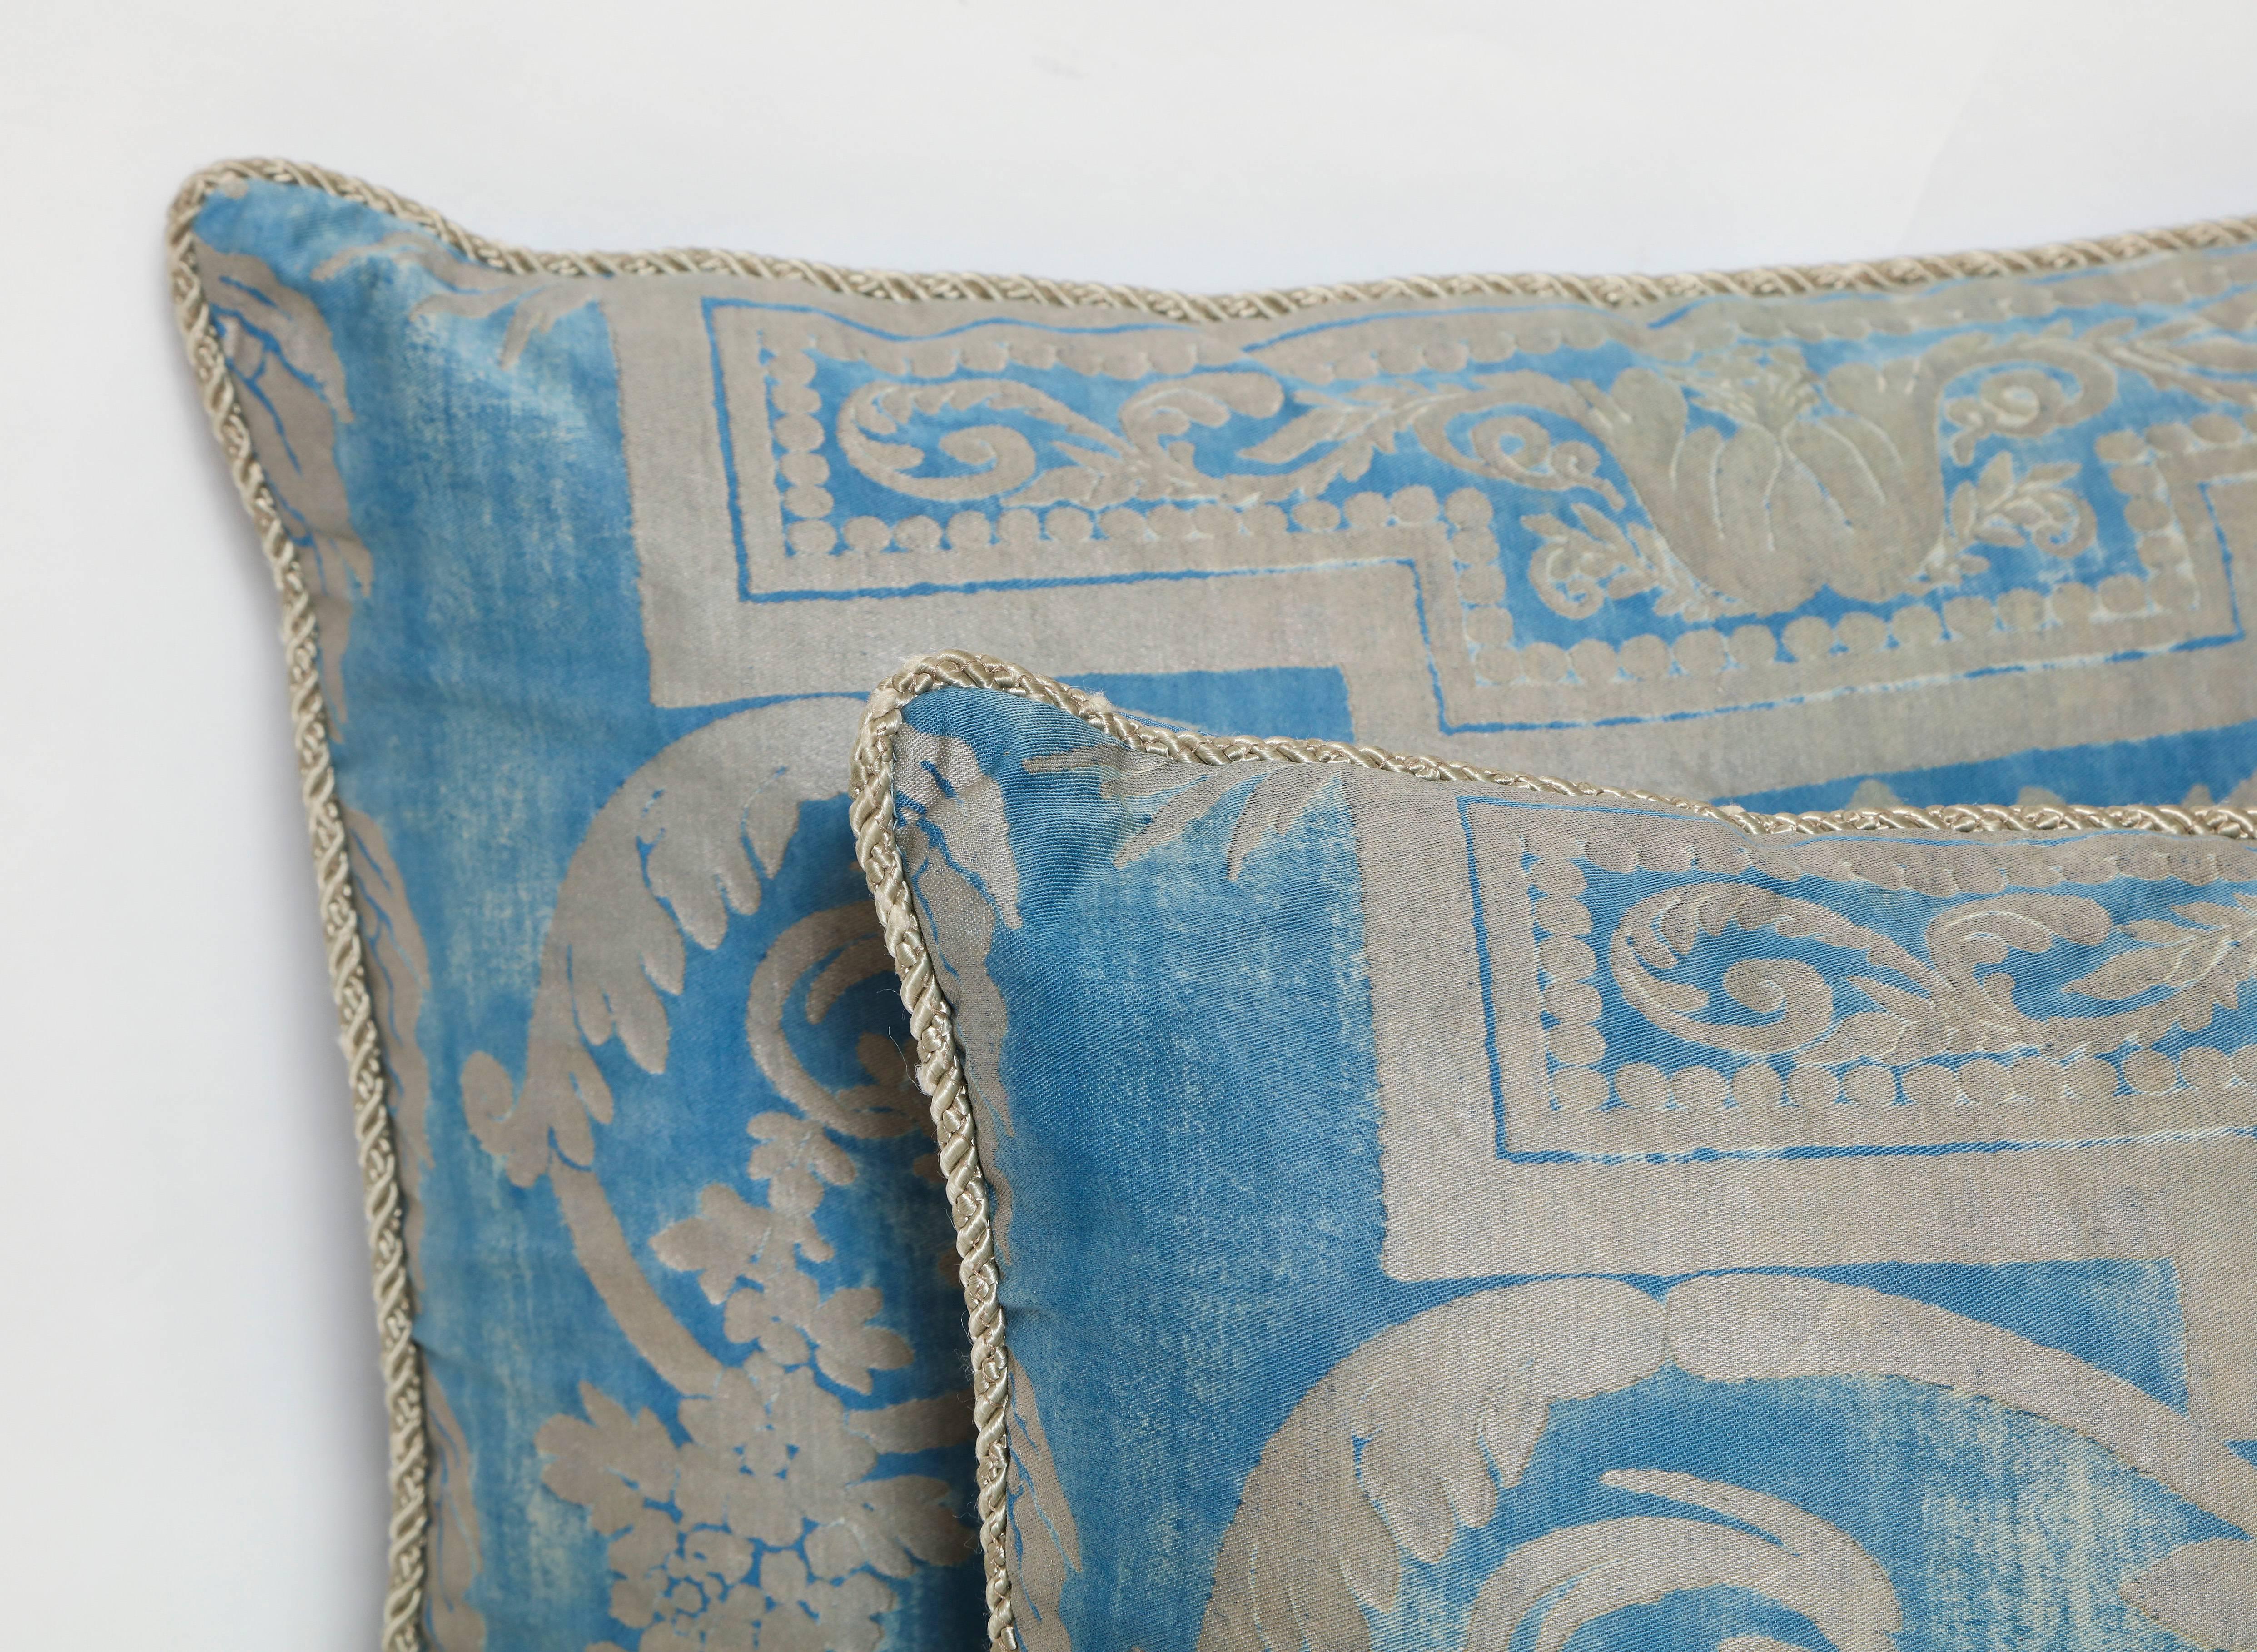 Coussin en soie de Fortuny en tissu bleu métallique et argenté représentant un motif néoclassique avec une guirlande drapée, avec une bordure tressée et un dos tissé.
50 duvet/50 plumes.
Réalisé à l'aide d'un tissu Fortuny d'époque, circa 1930.
 